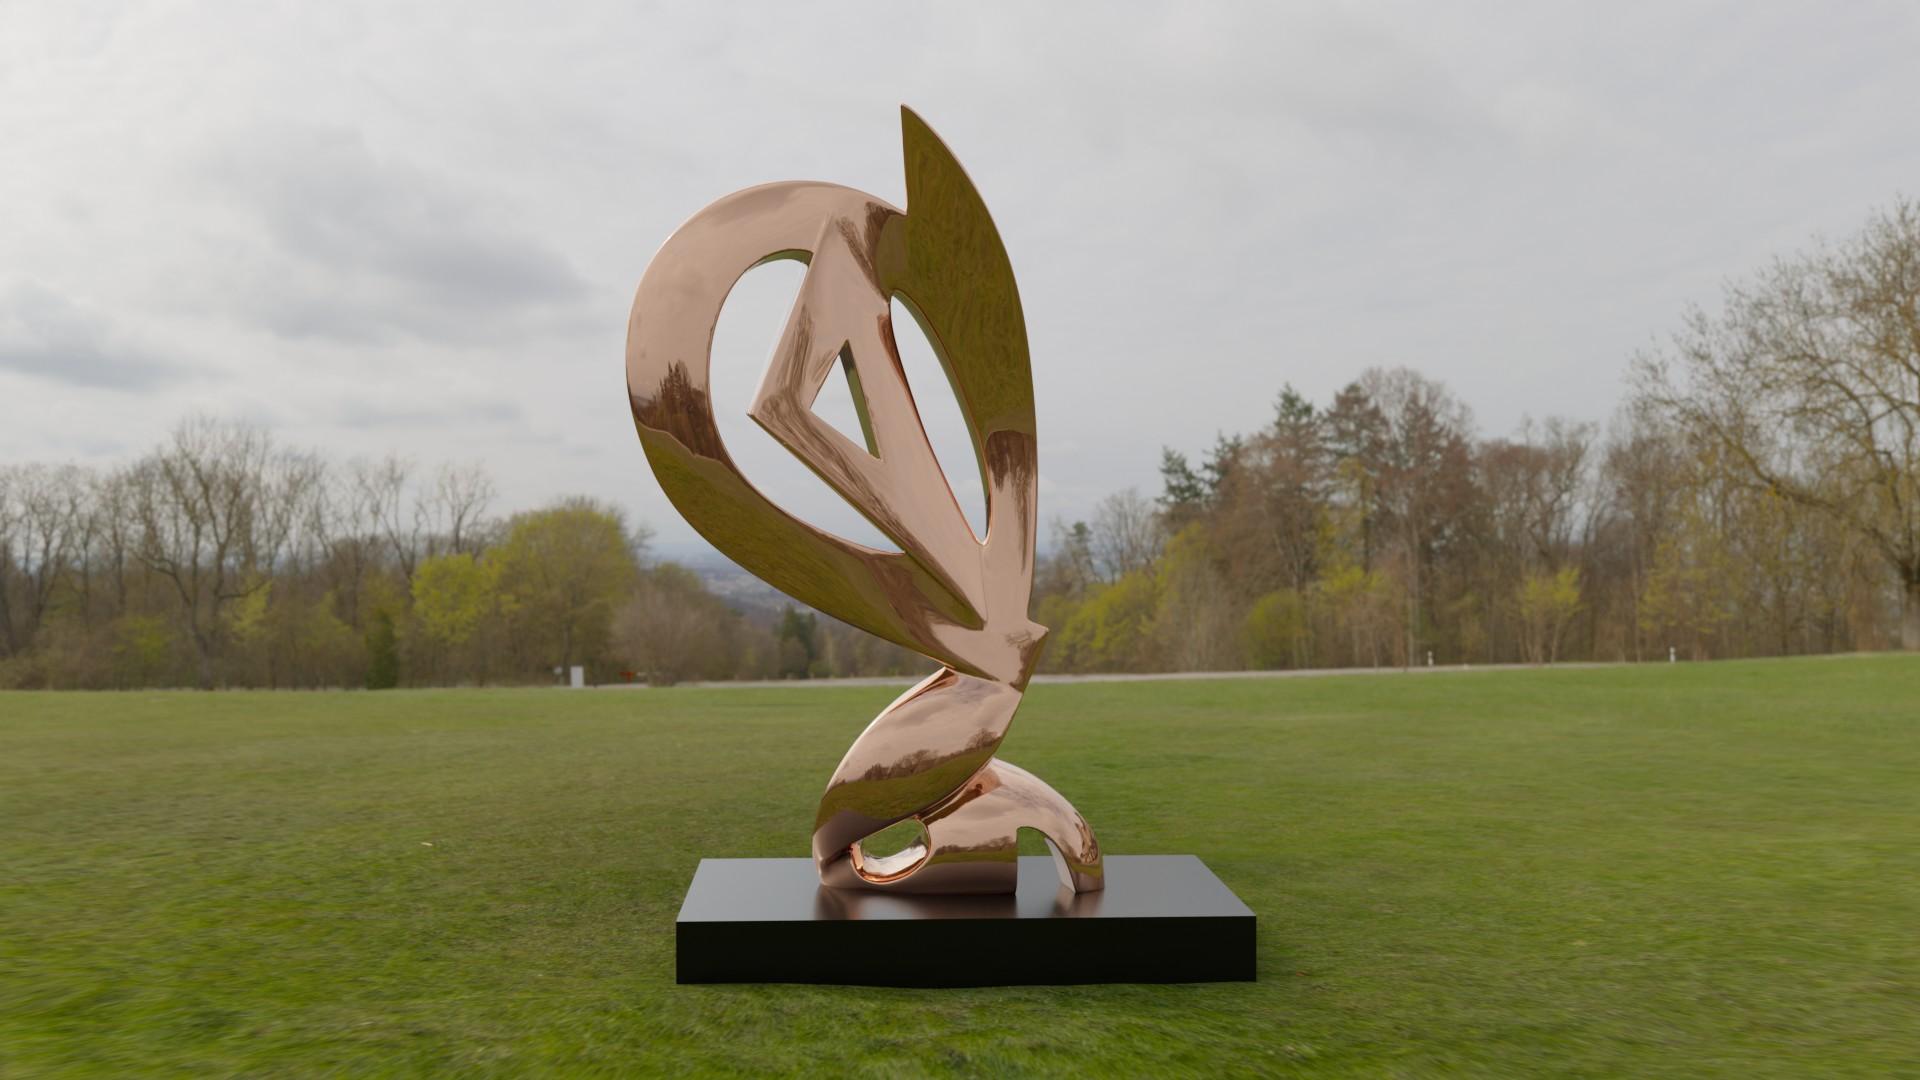 Jan Willem Krijger Abstract Sculpture - The Guardian